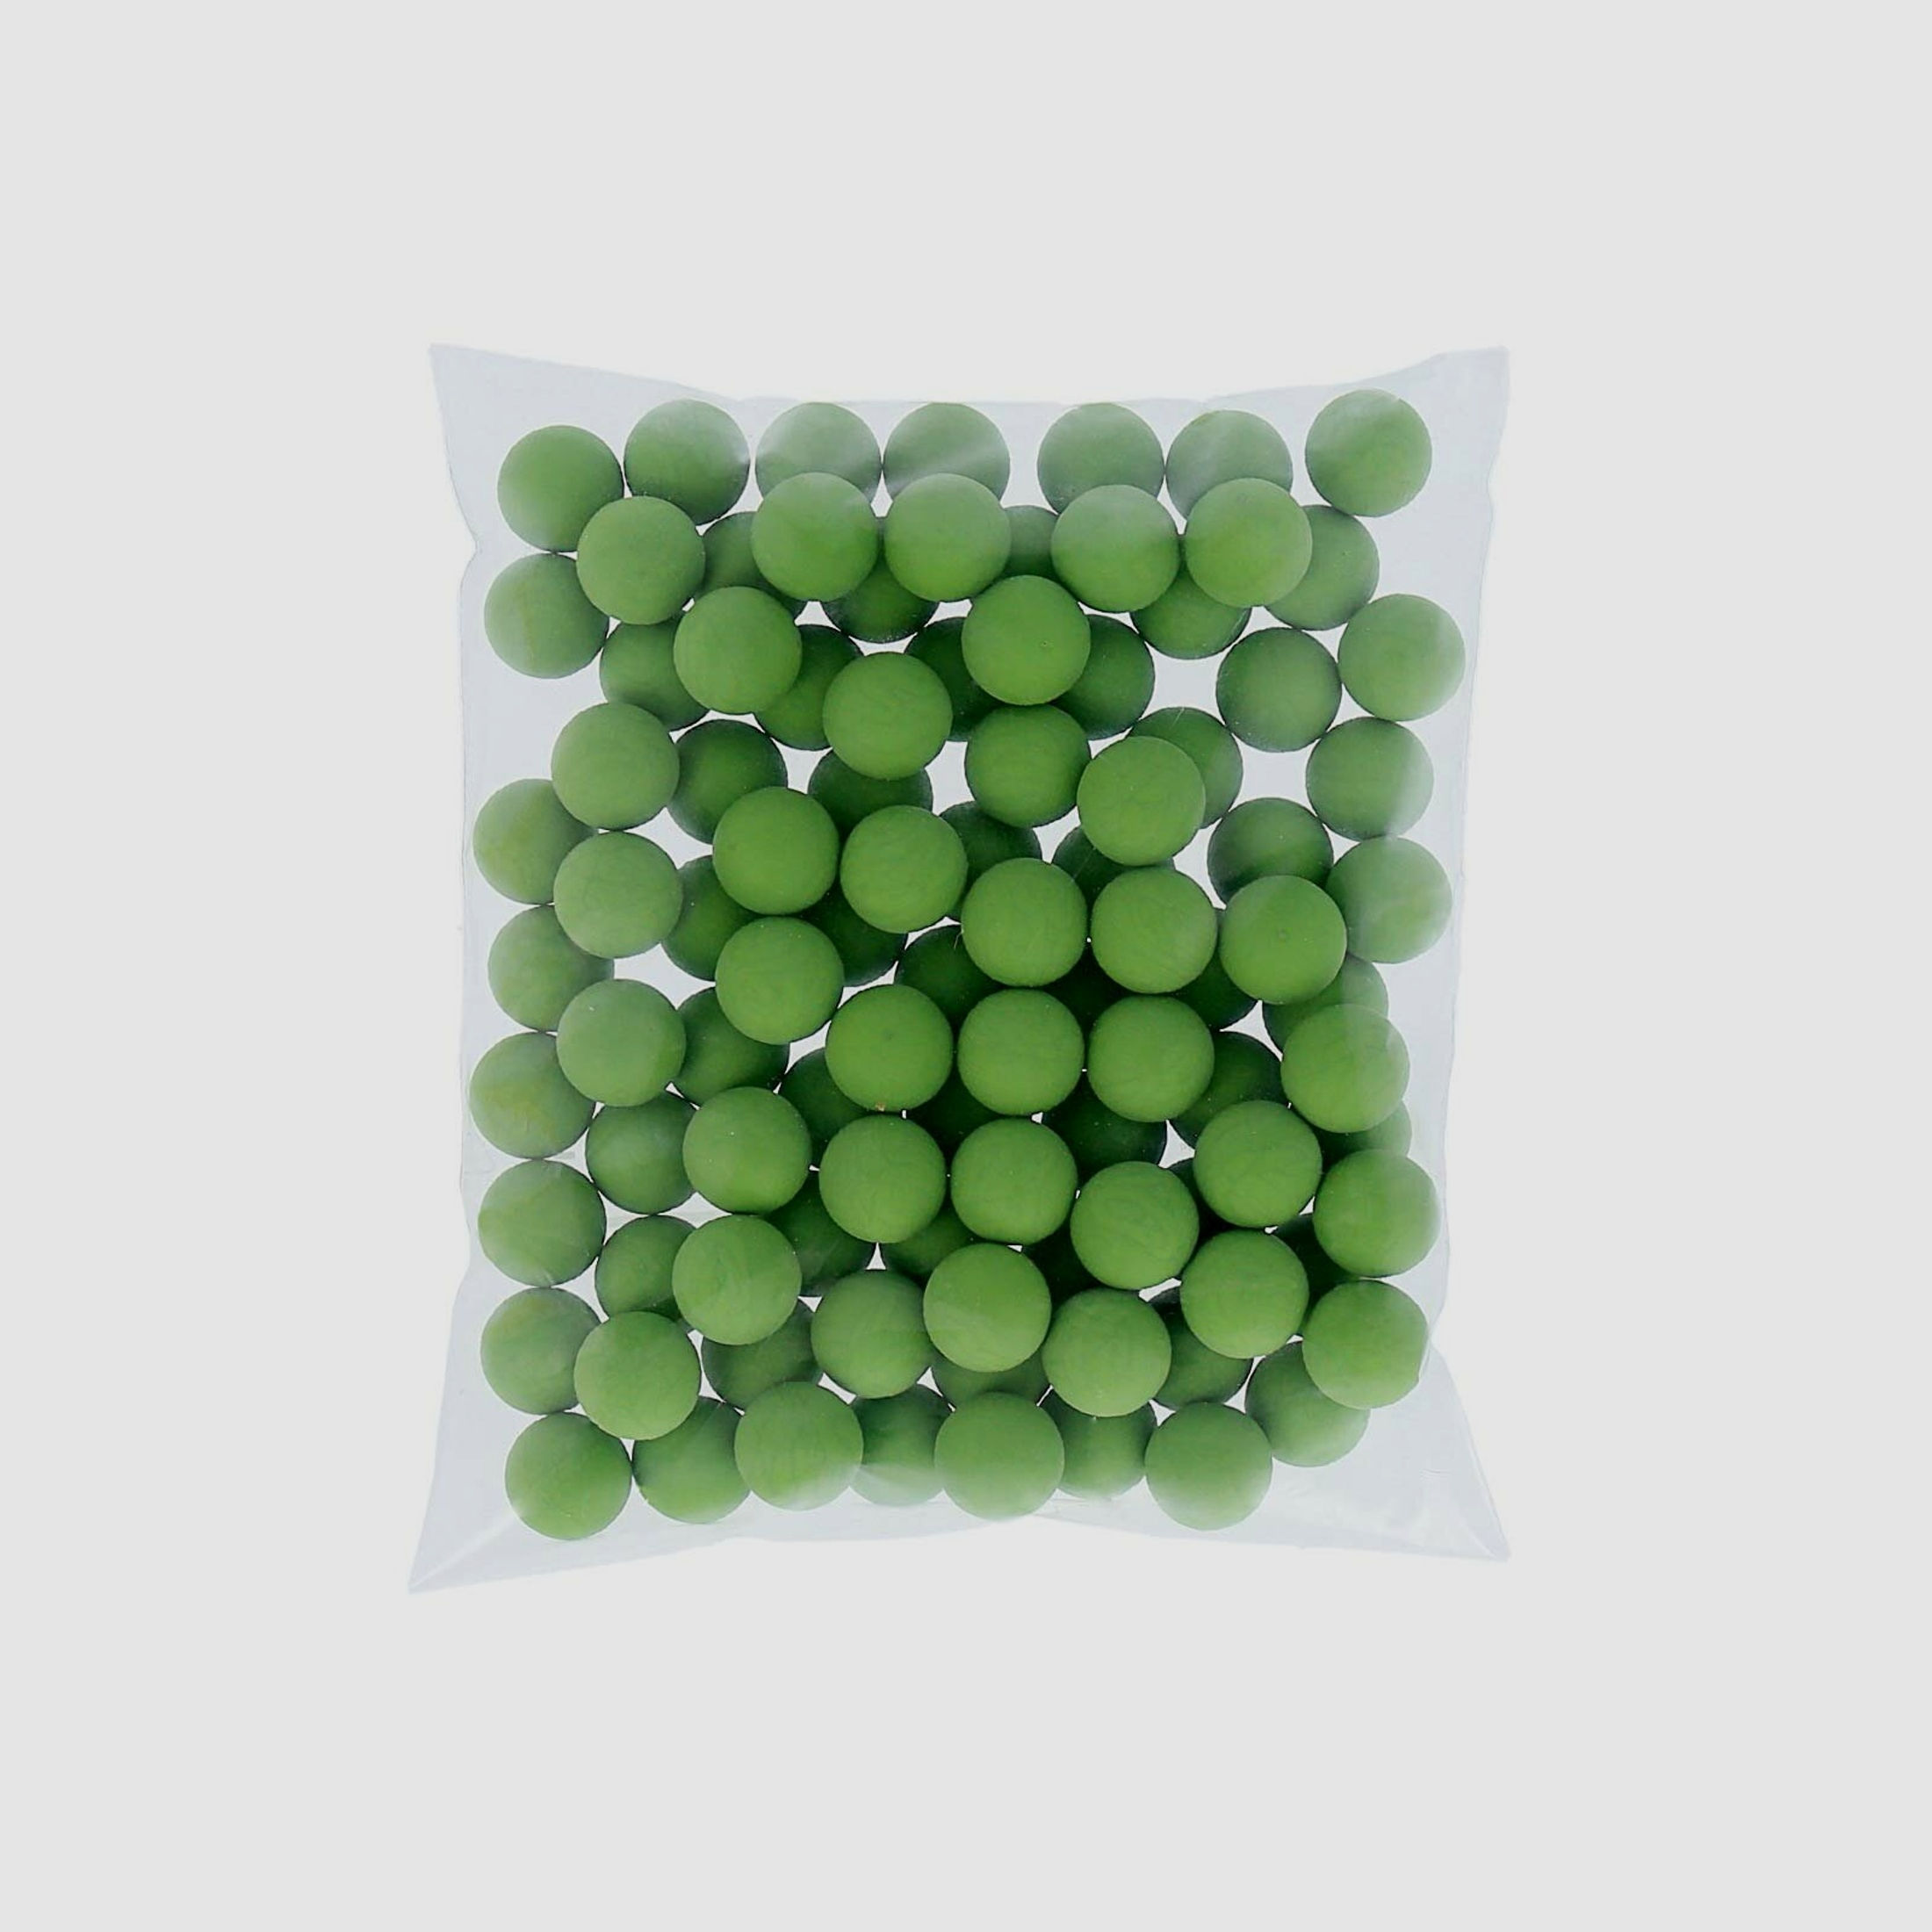 Rubberballs / Gummigeschosse Grün cal .50 - 100 Stück